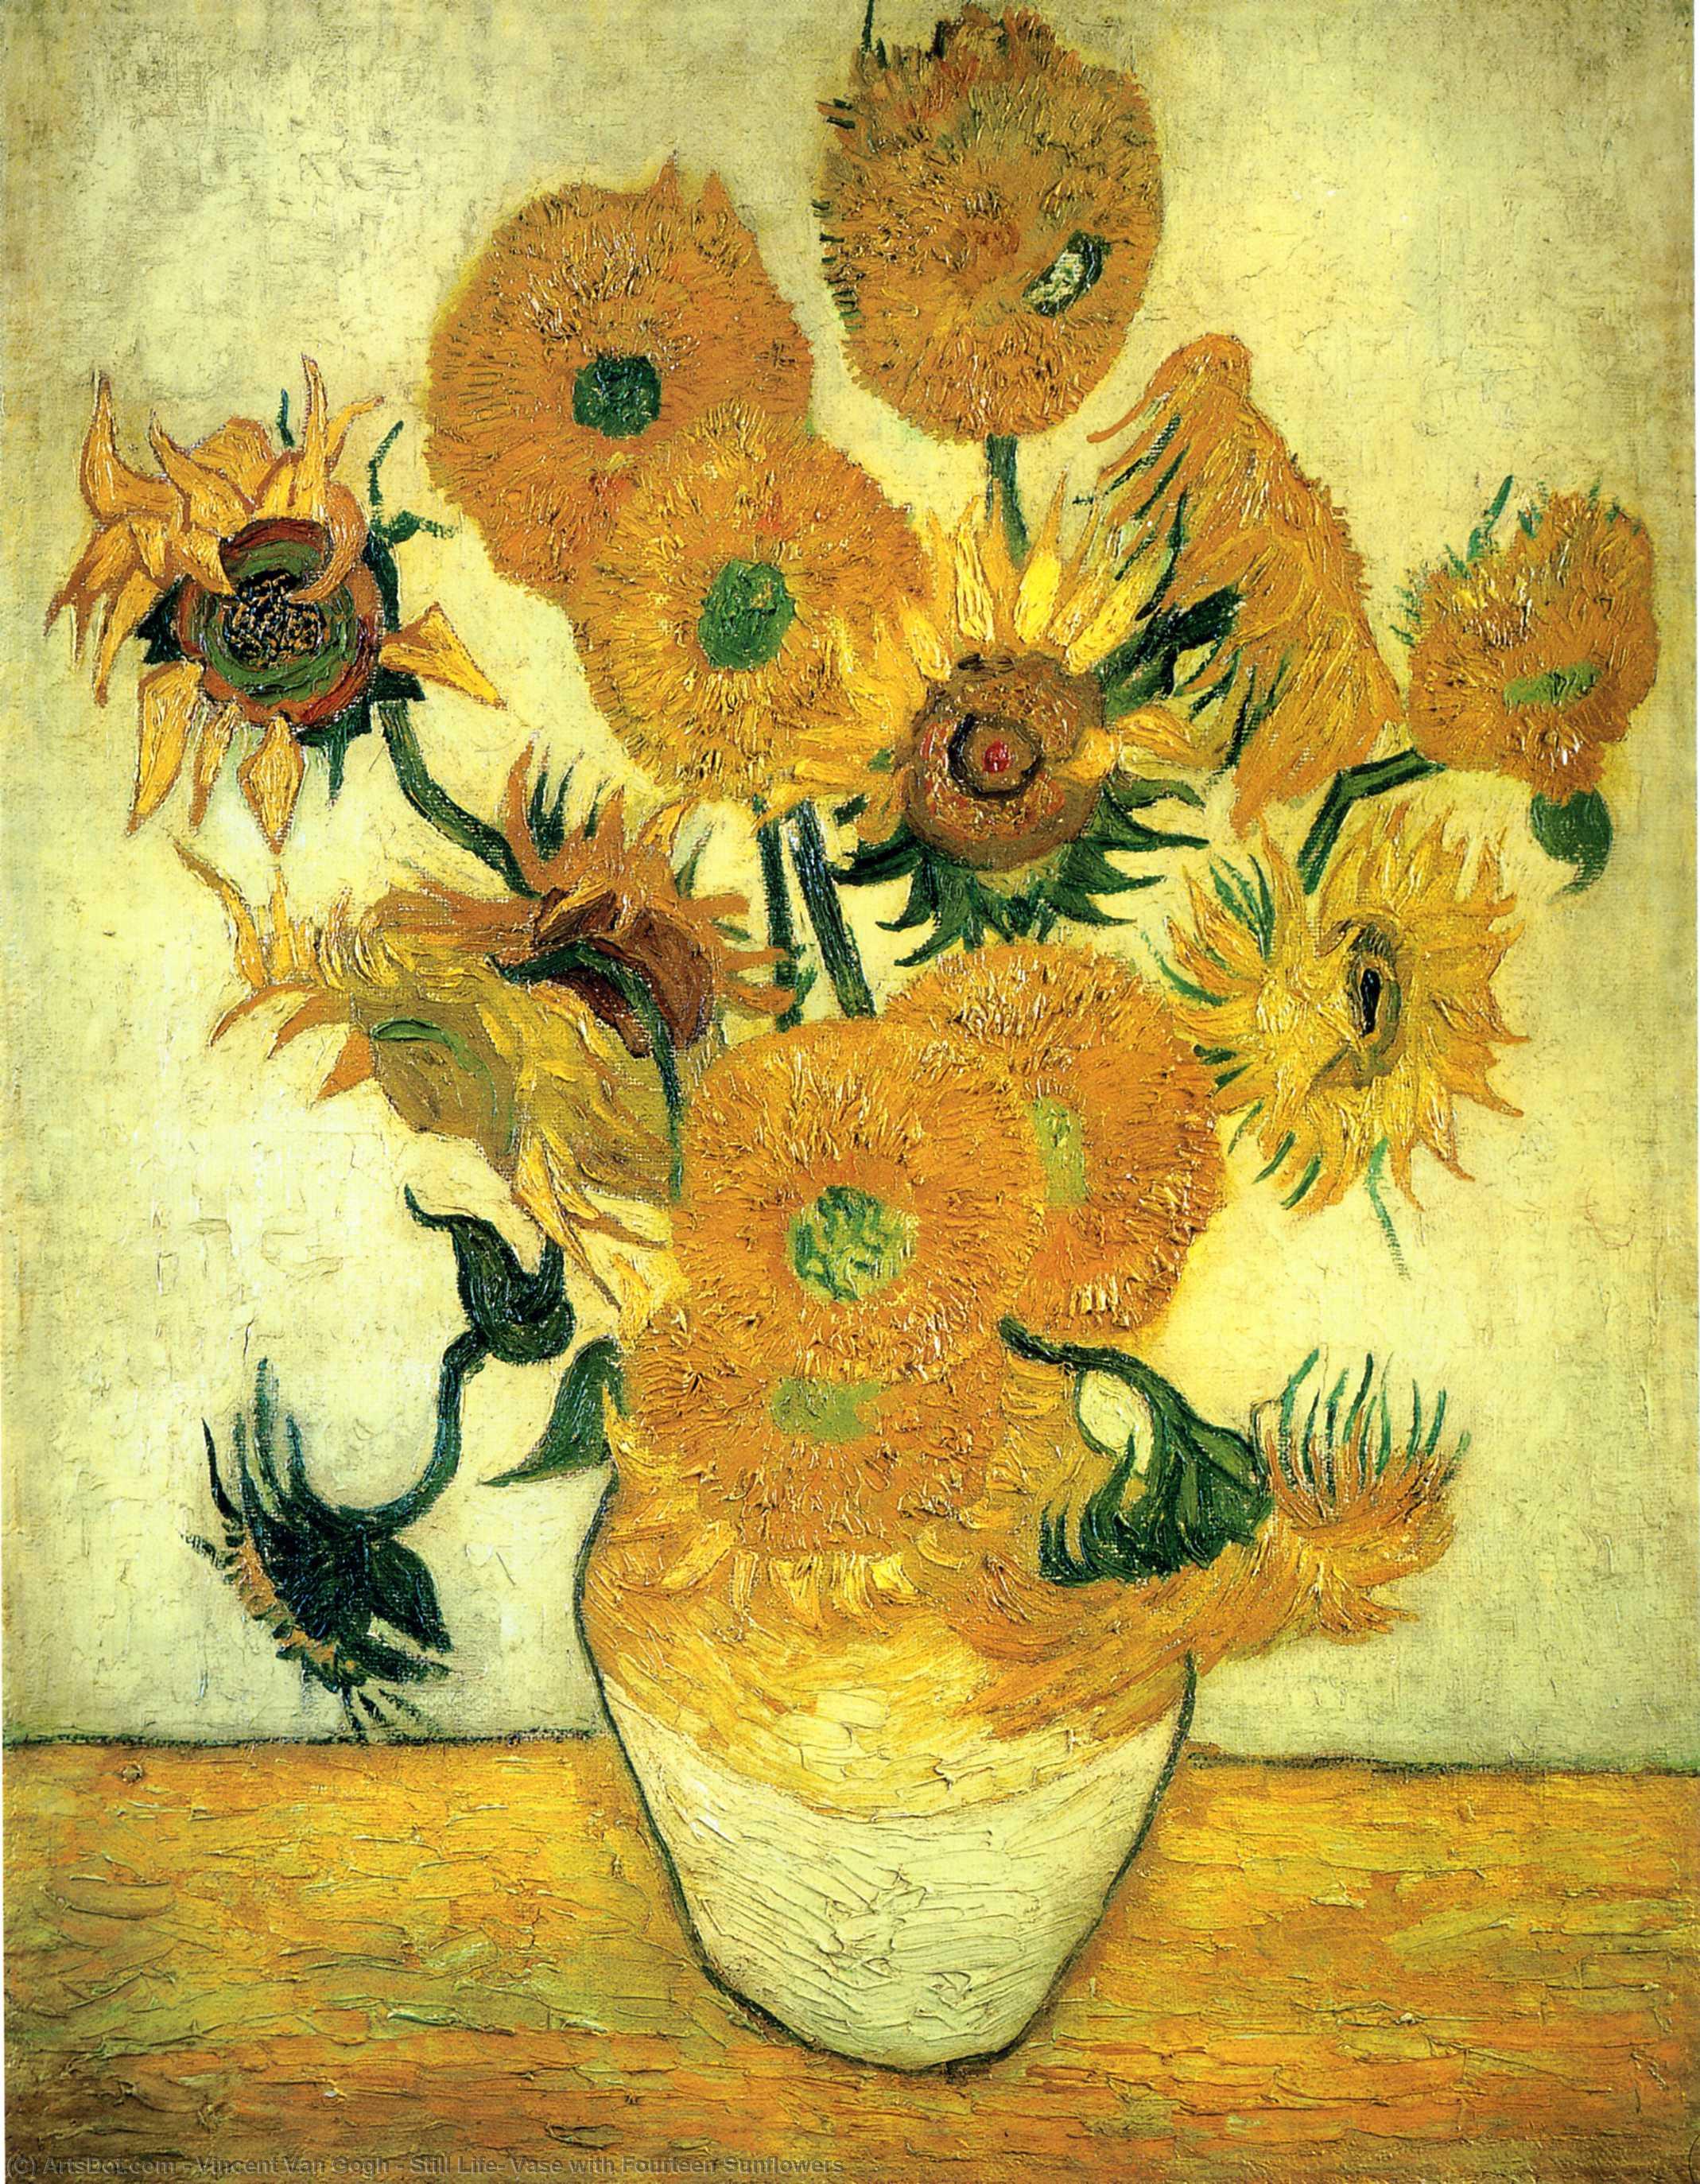 Compra Riproduzioni D'arte Del Museo Natura morta: vaso con quattordici girasoli, 1889 di Vincent Van Gogh (1853-1890, Netherlands) | ArtsDot.com